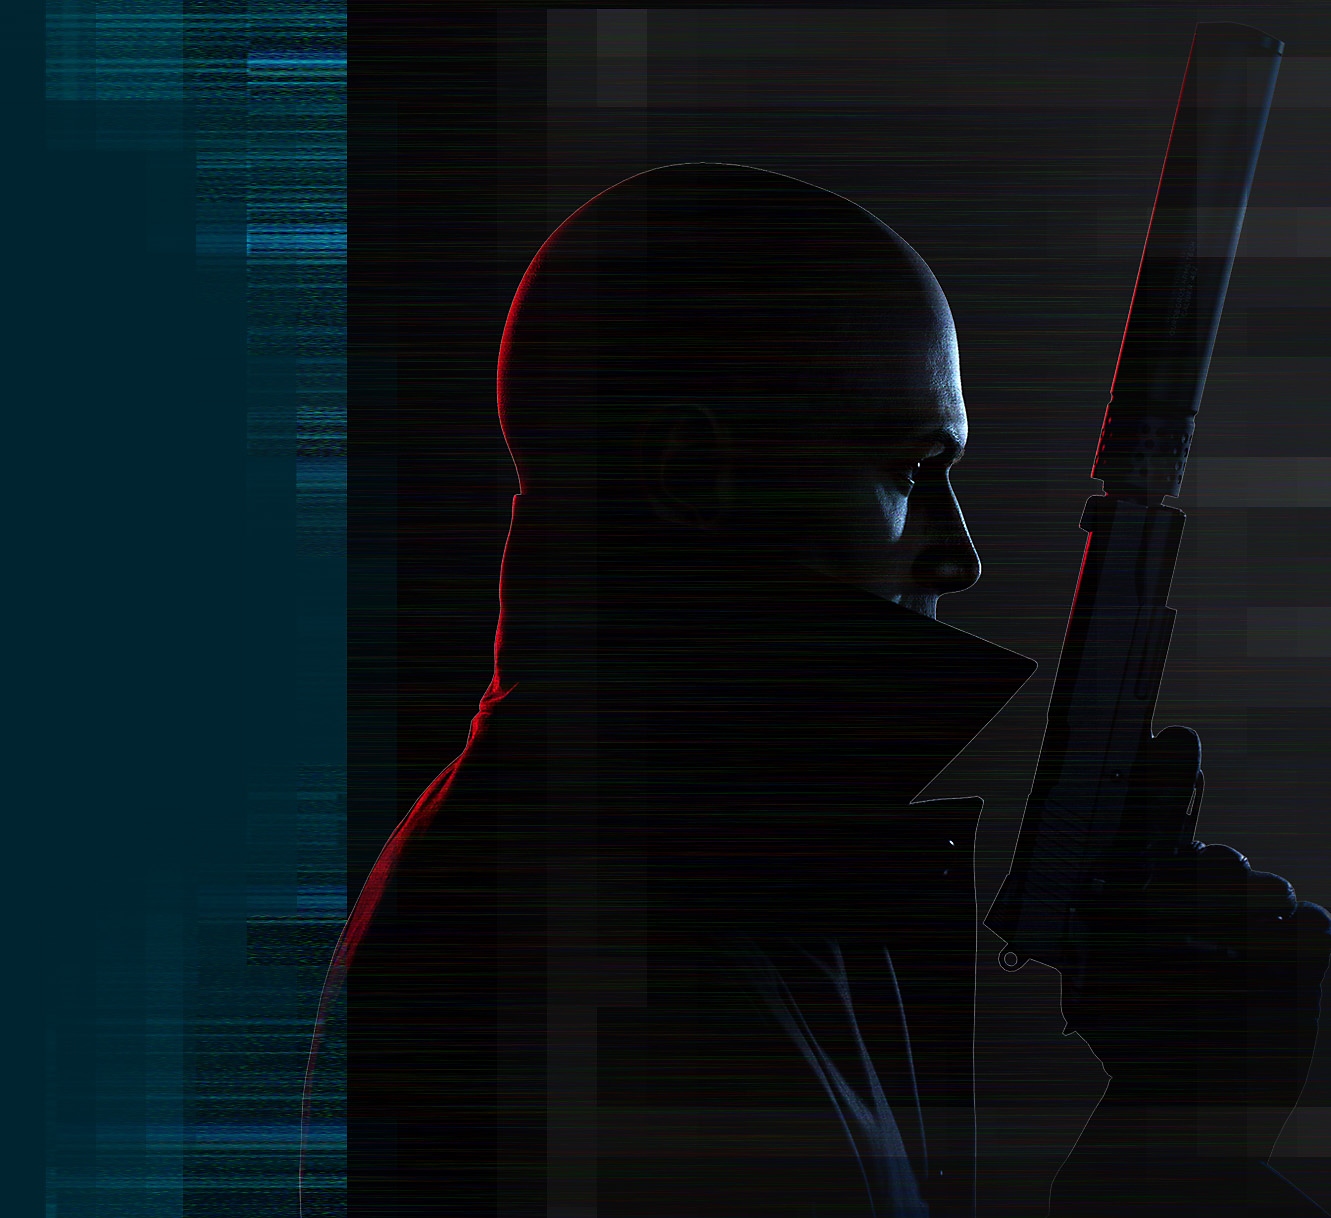 Renderizado artístico del "Agente 47", protagonista de Hitman 3, sosteniendo una pistola con silenciador